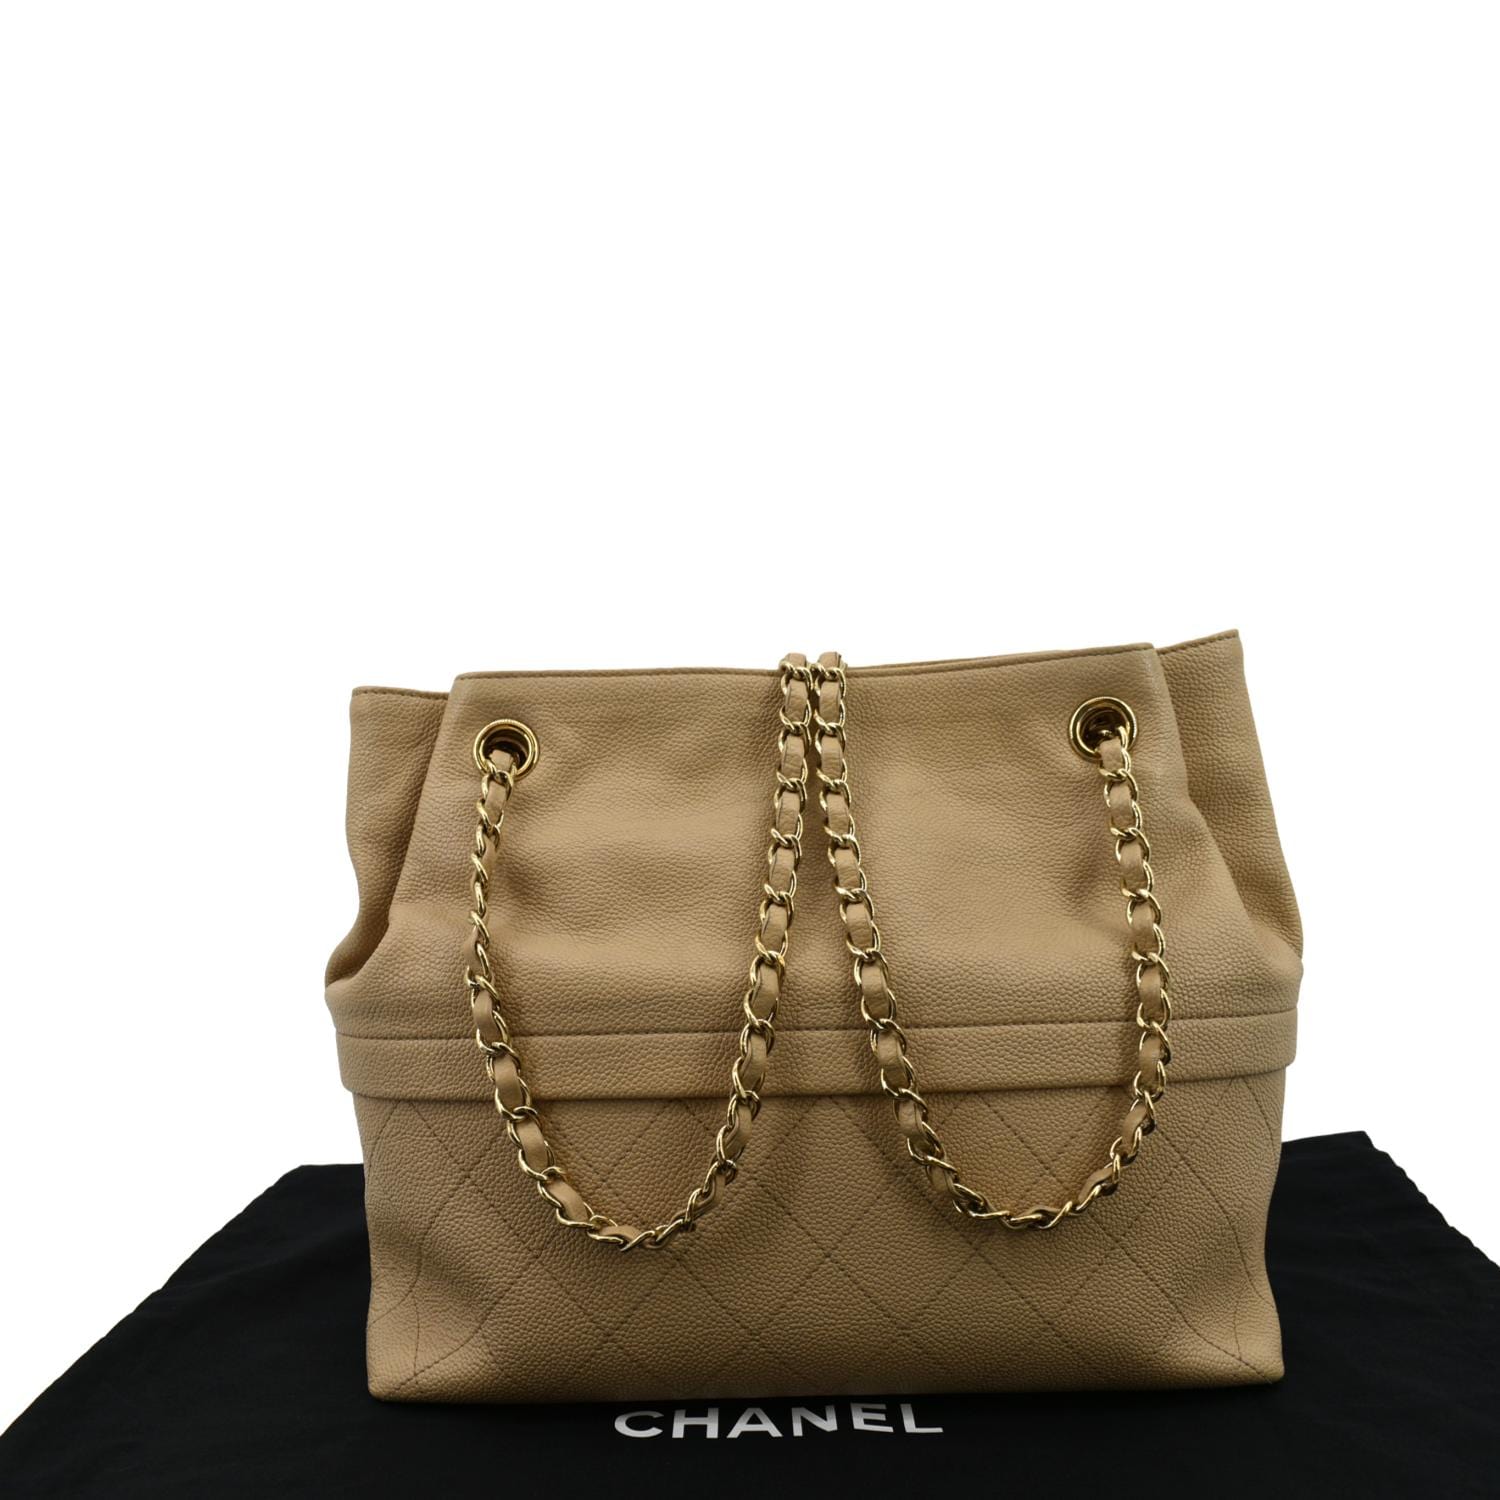 Vintage CHANEL beige calf leather large chain shoulder tote bag